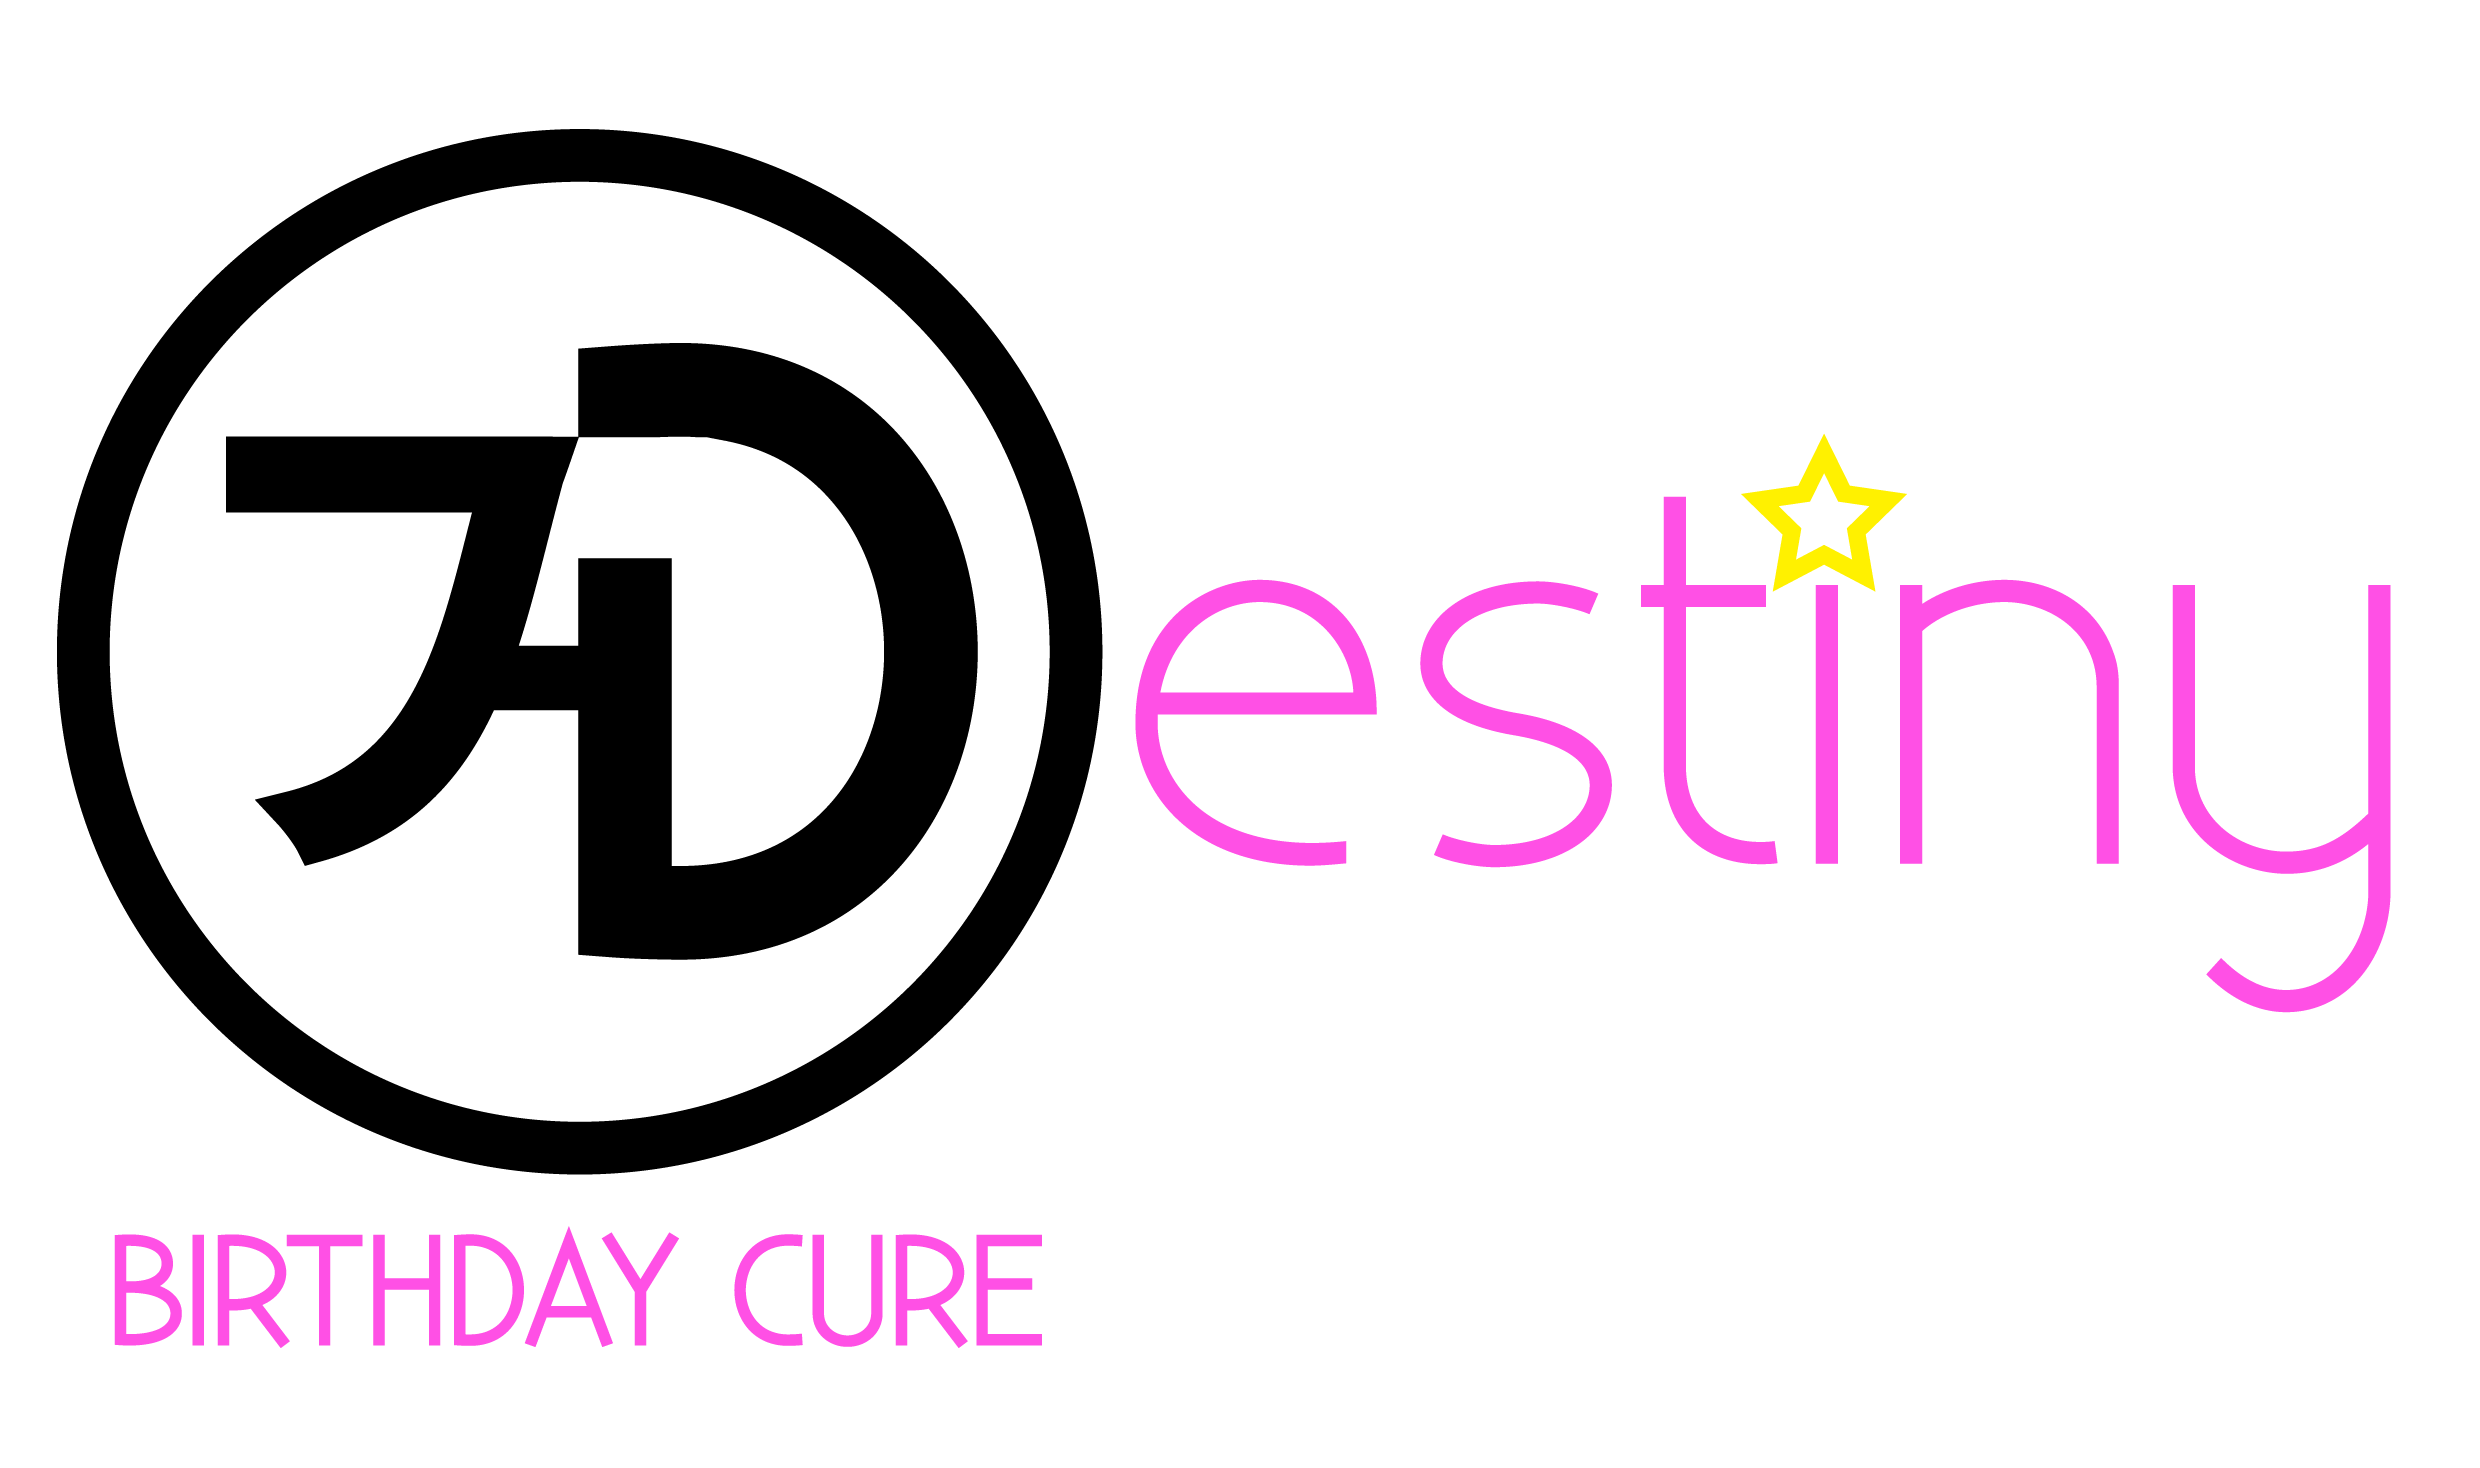 identity 7-destiny logo